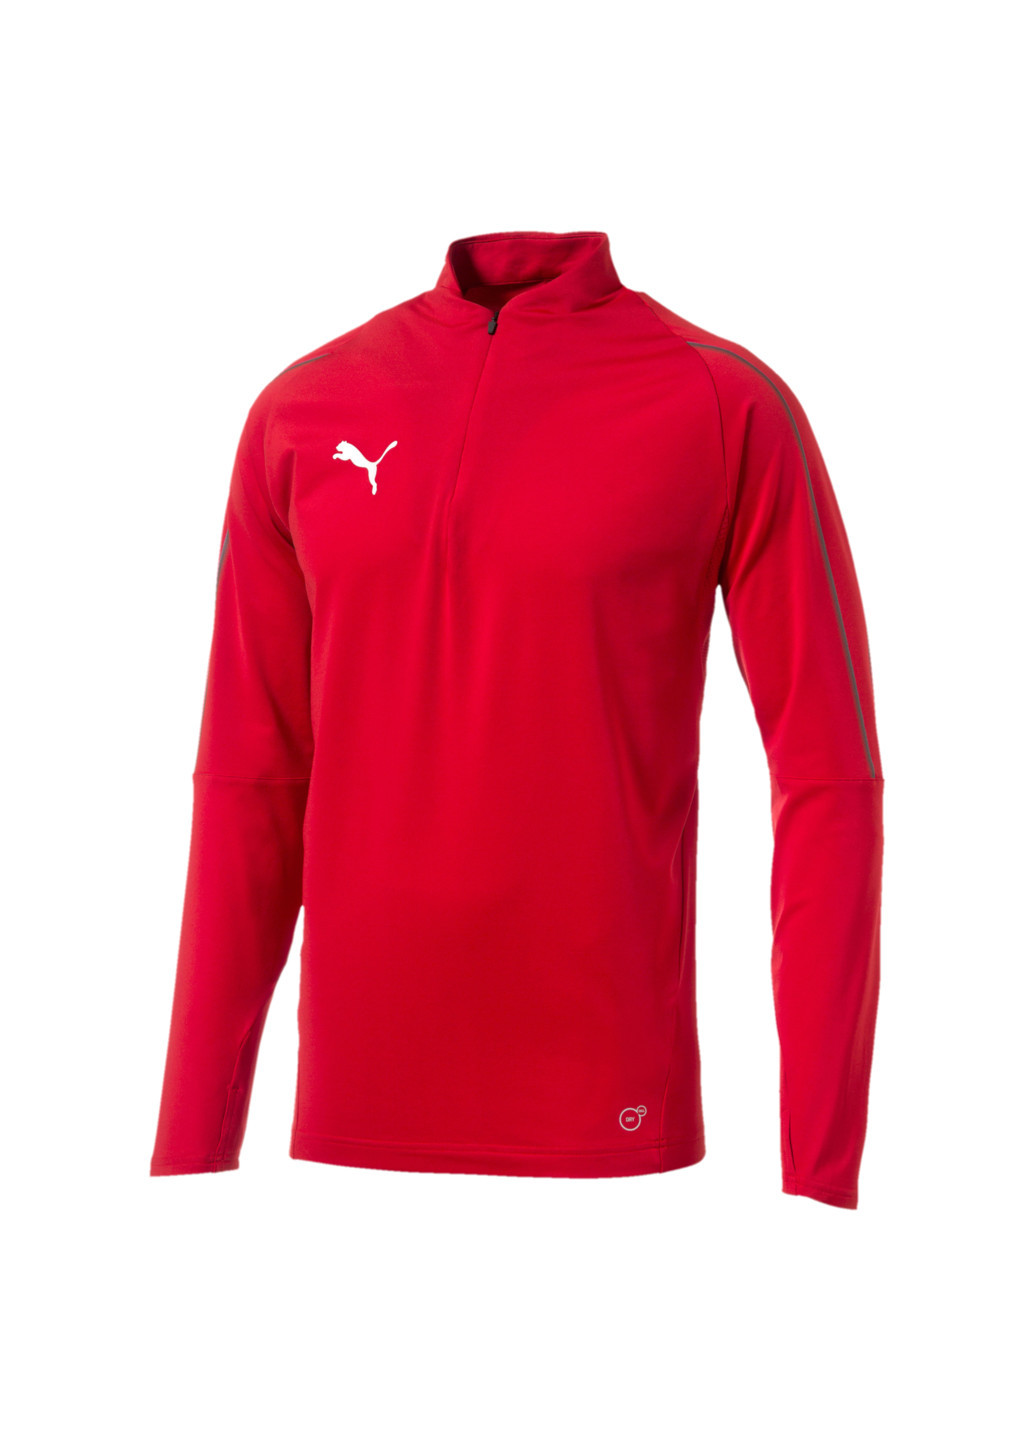 Толстовка FINAL Training Quarter Zip Men's Football Sweater Puma однотонная красная спортивная полиэстер, эластан